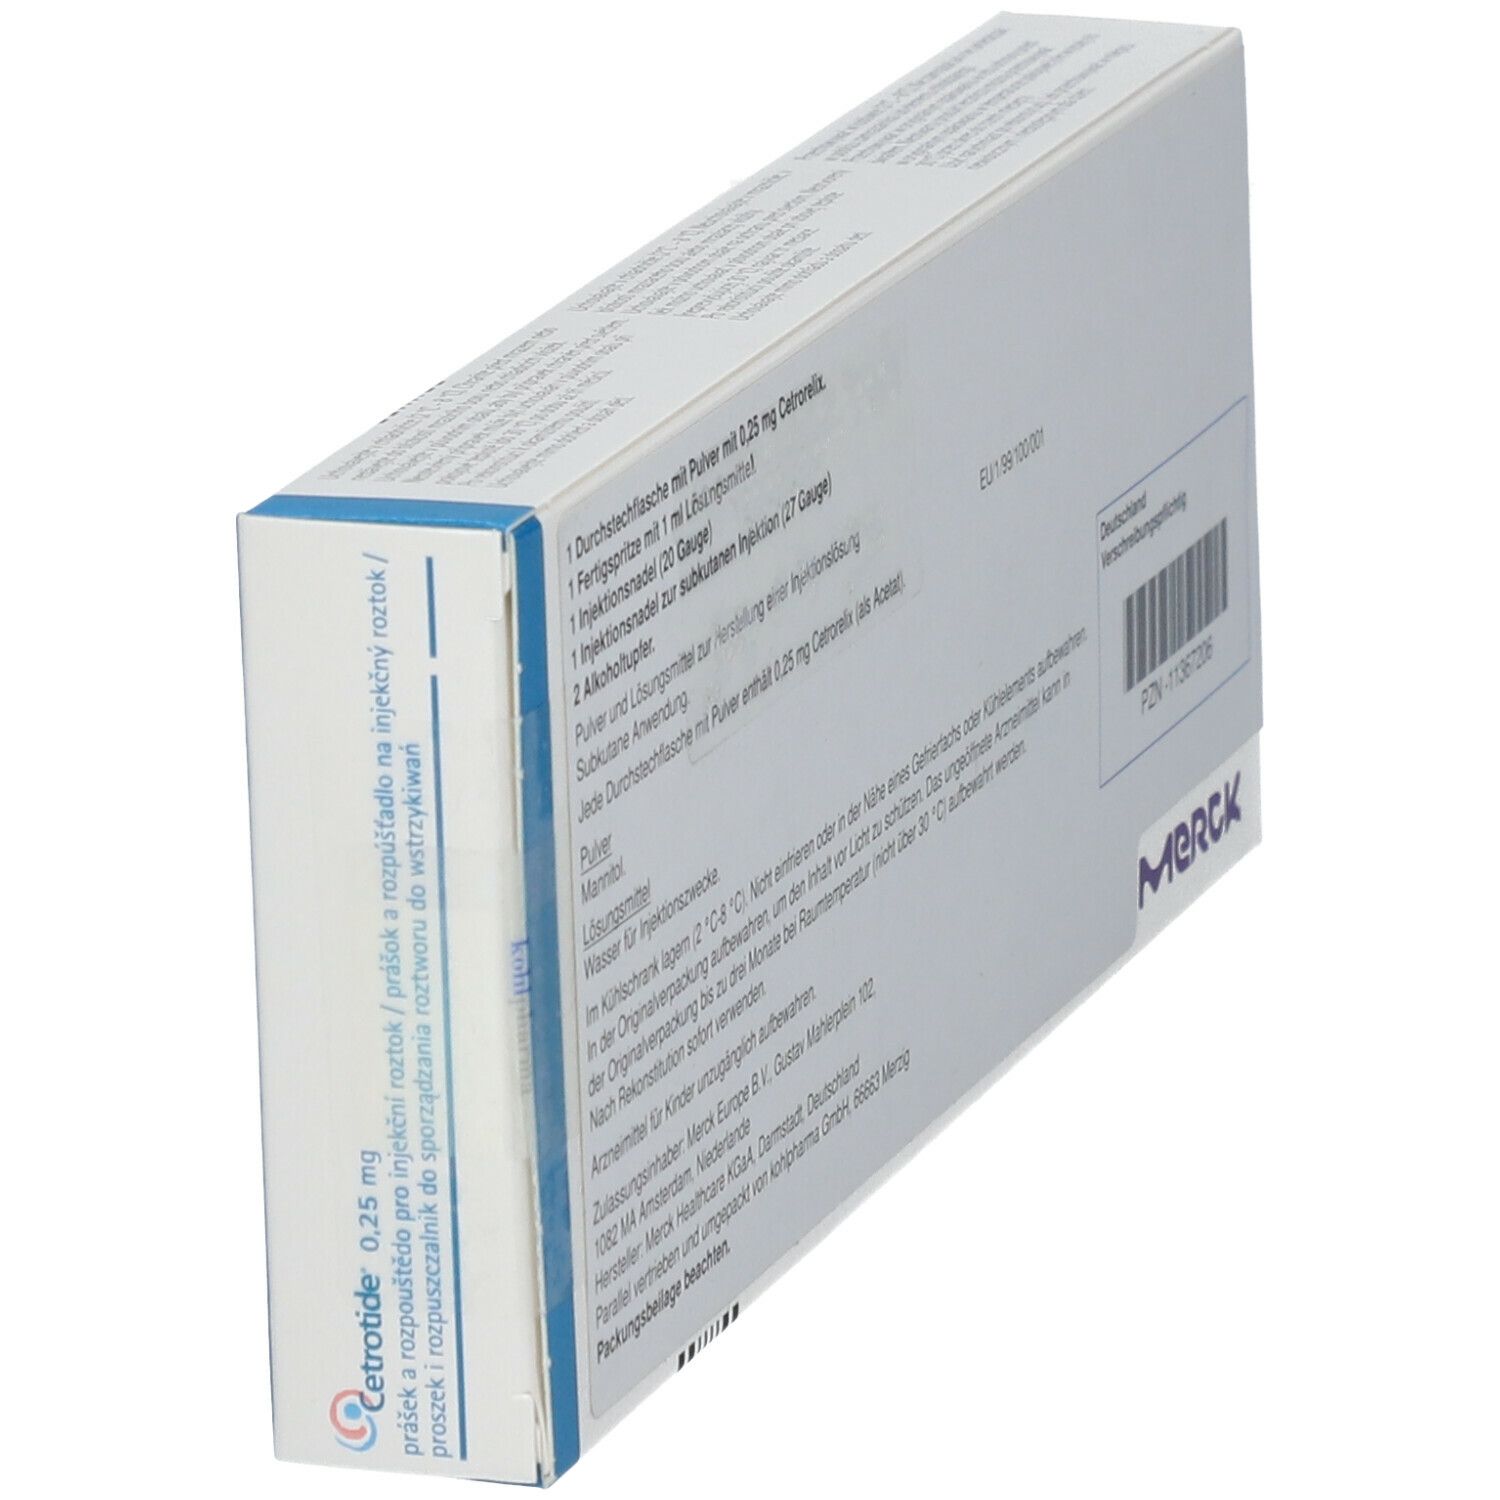 CETROTIDE 0,25 mg Plv.u.Lsm.z.H.e.Injektionslsg.